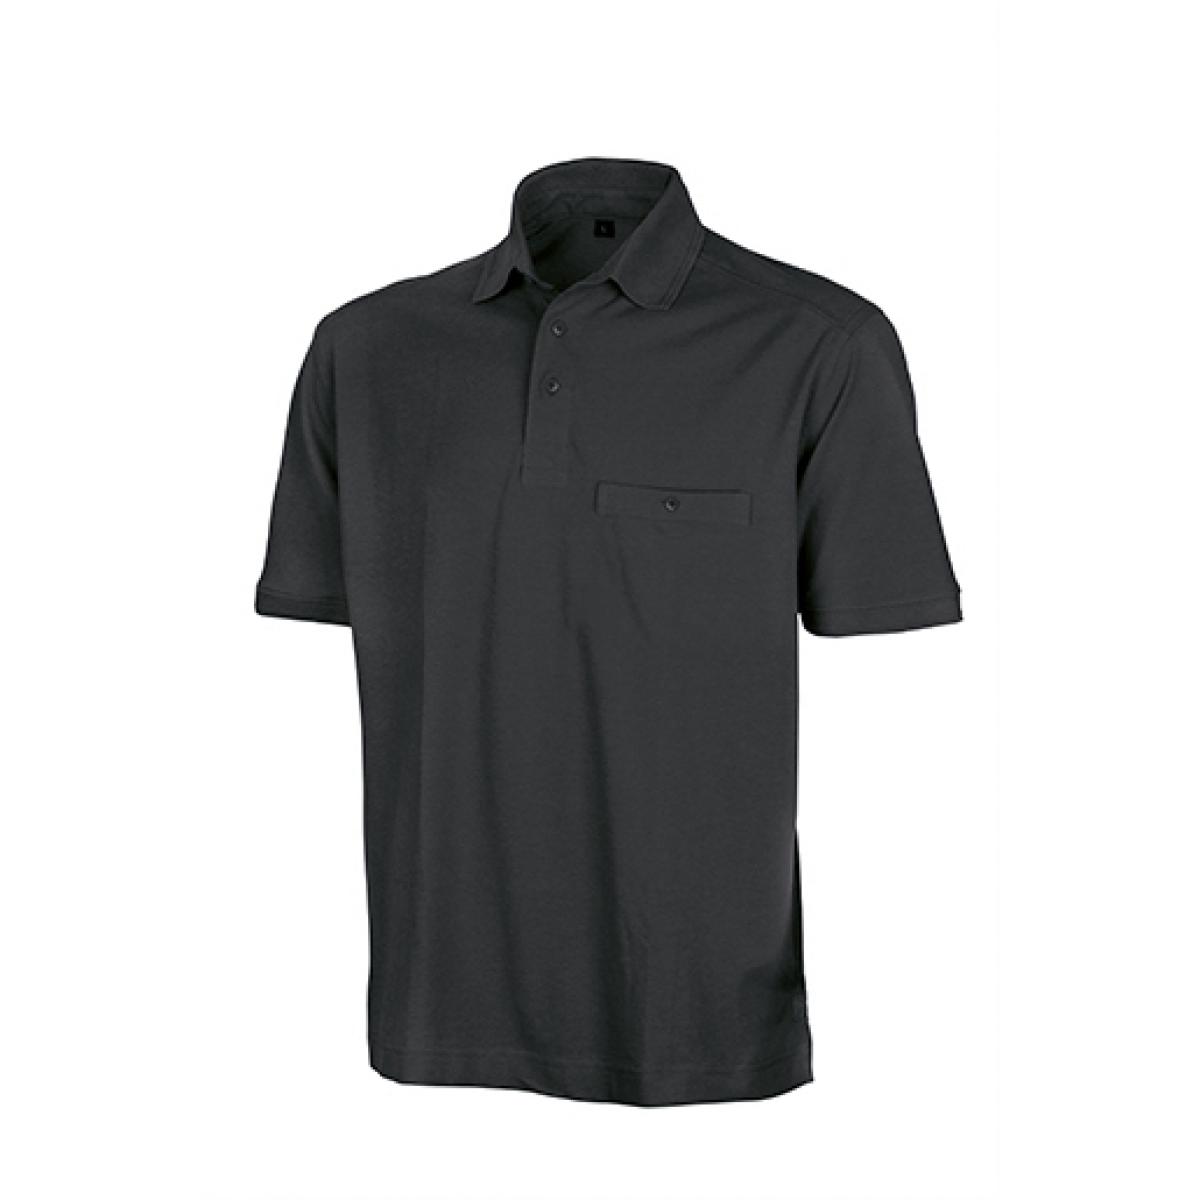 Hersteller: Result WORK-GUARD Herstellernummer: R312X Artikelbezeichnung: Herren Apex Polo Shirt / Strapazierfähig aus Mischgewebe Farbe: Black